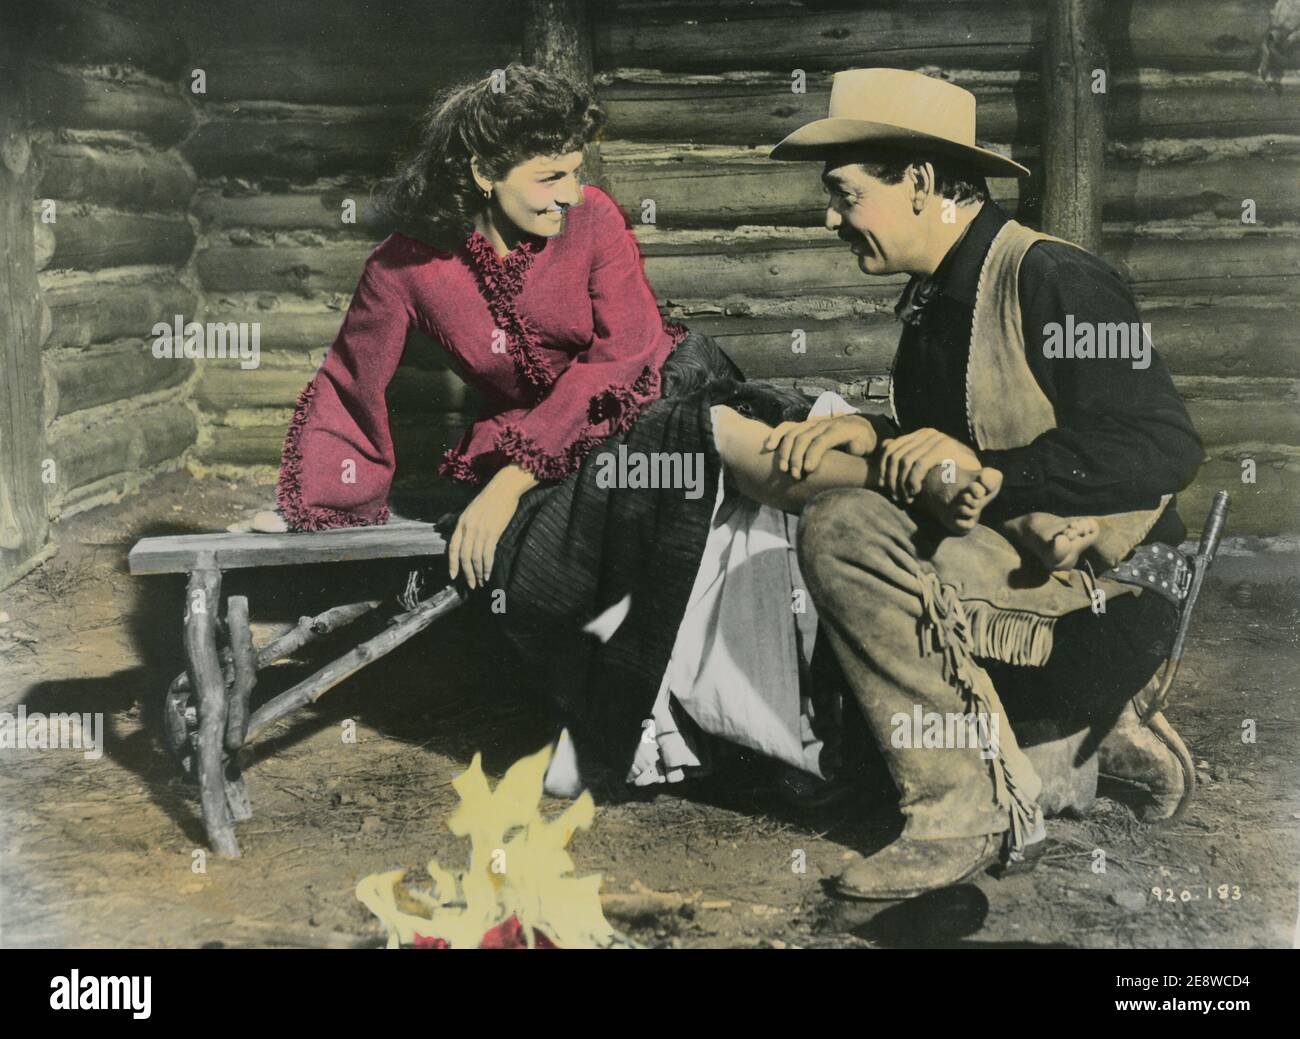 Die Großen Männer. Ein amerikanischer Western-Film von 1955 mit Jane Russell und Clark Gable. Jane Russel wurde im juni 21 1921 geboren und starb im februar 28 2011. Der Film hatte Premiere am 22 1955. september. Stockfoto